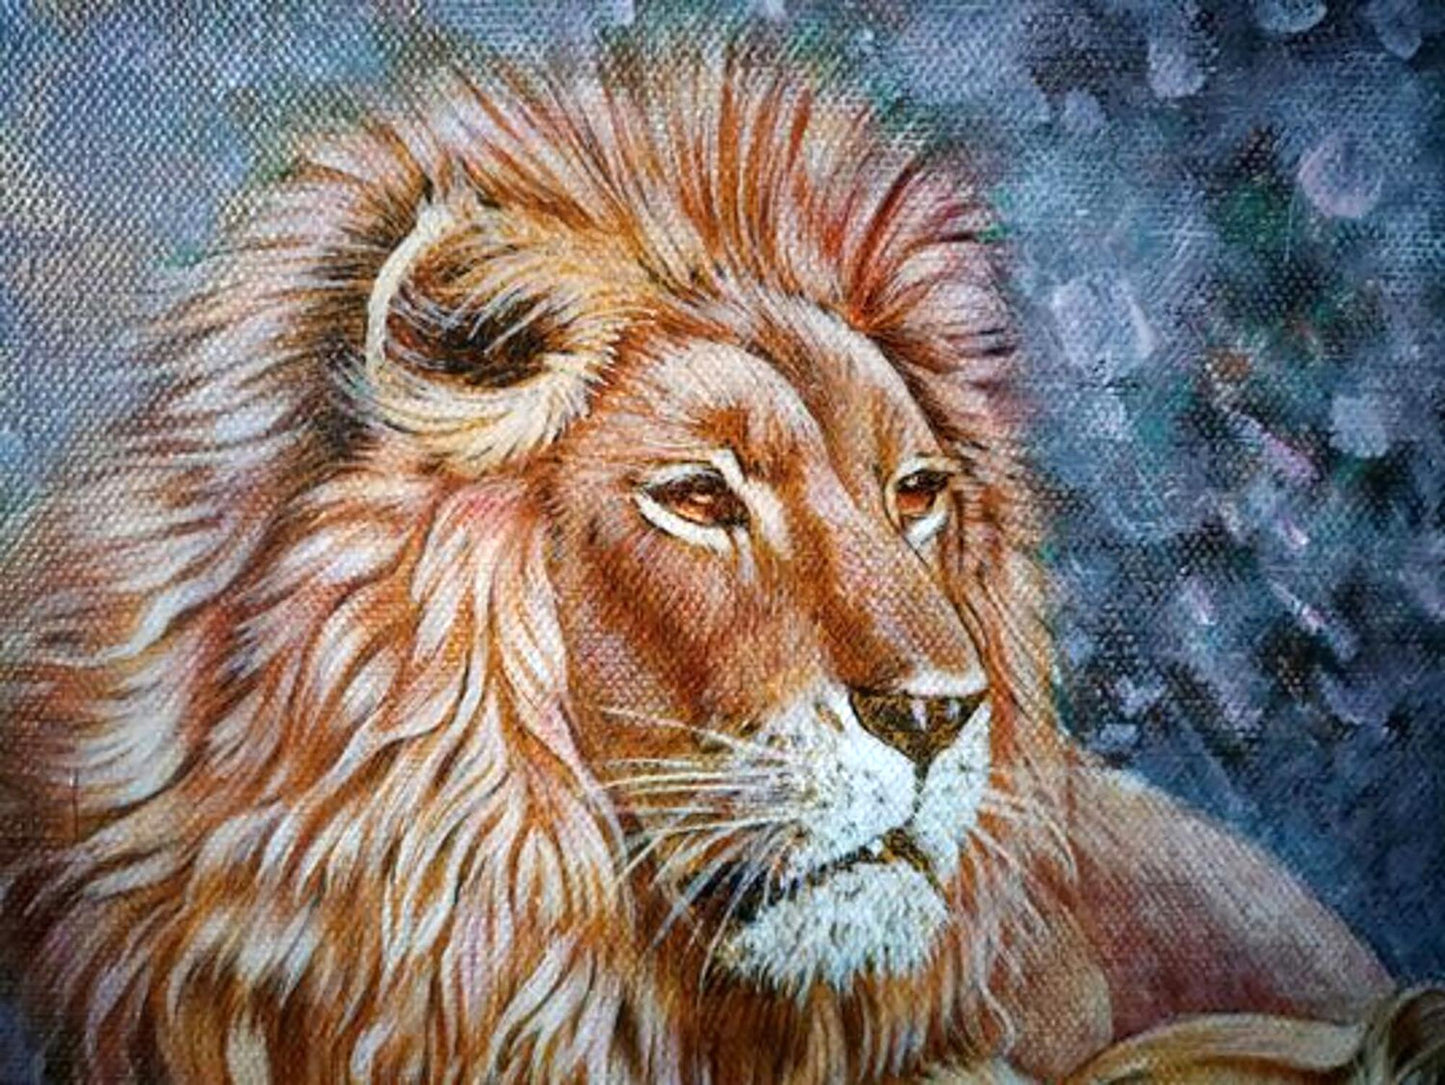 Goncharenko V. V.'s oil painting showcasing a pride of lions